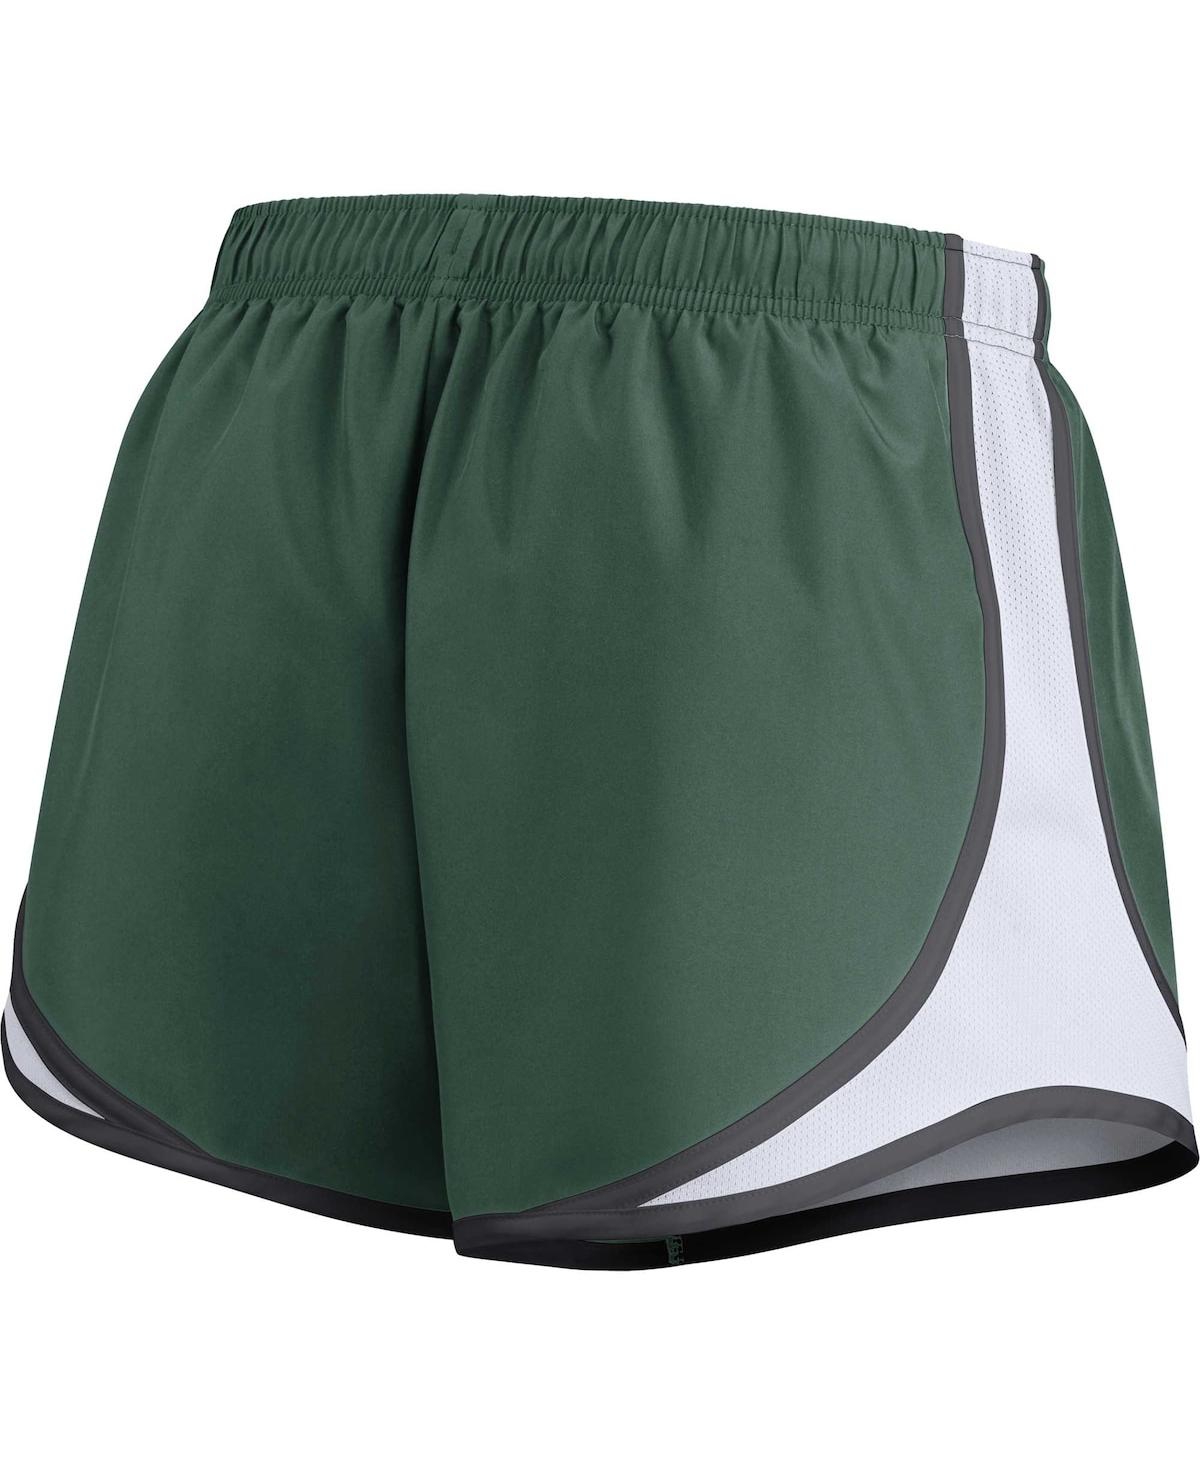 Shop Nike Women's  Green Green Bay Packers Tempo Shorts